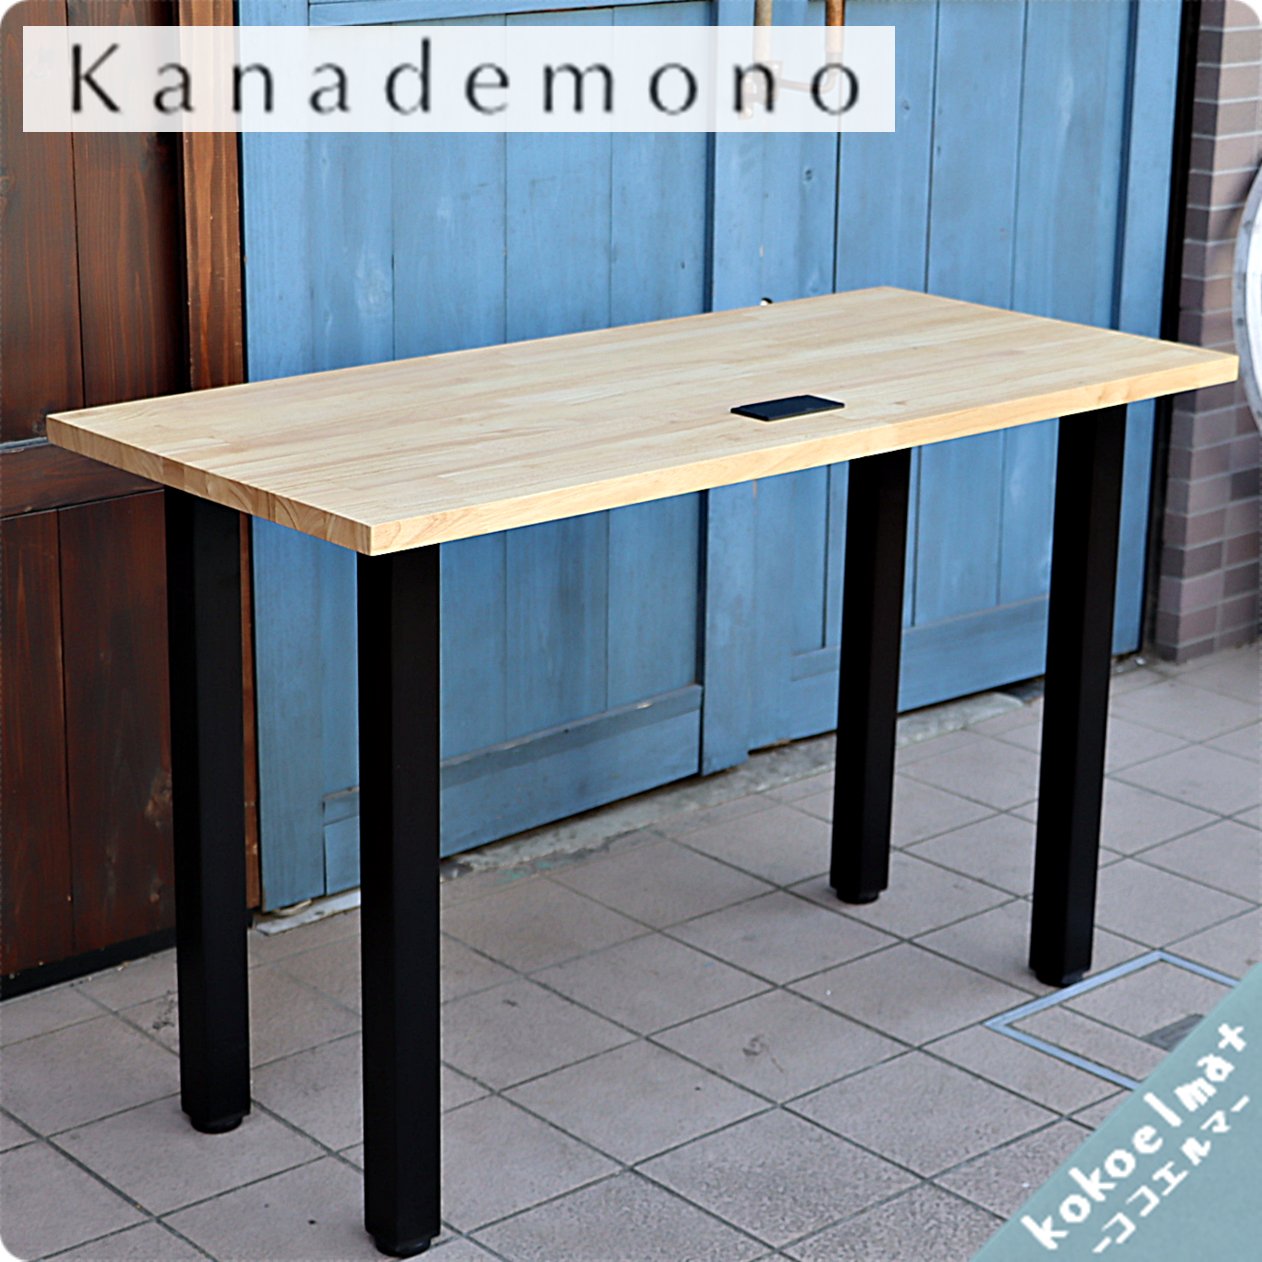 KANADEMONO ラバーウッドテーブル 140×66cm アッシュグレー